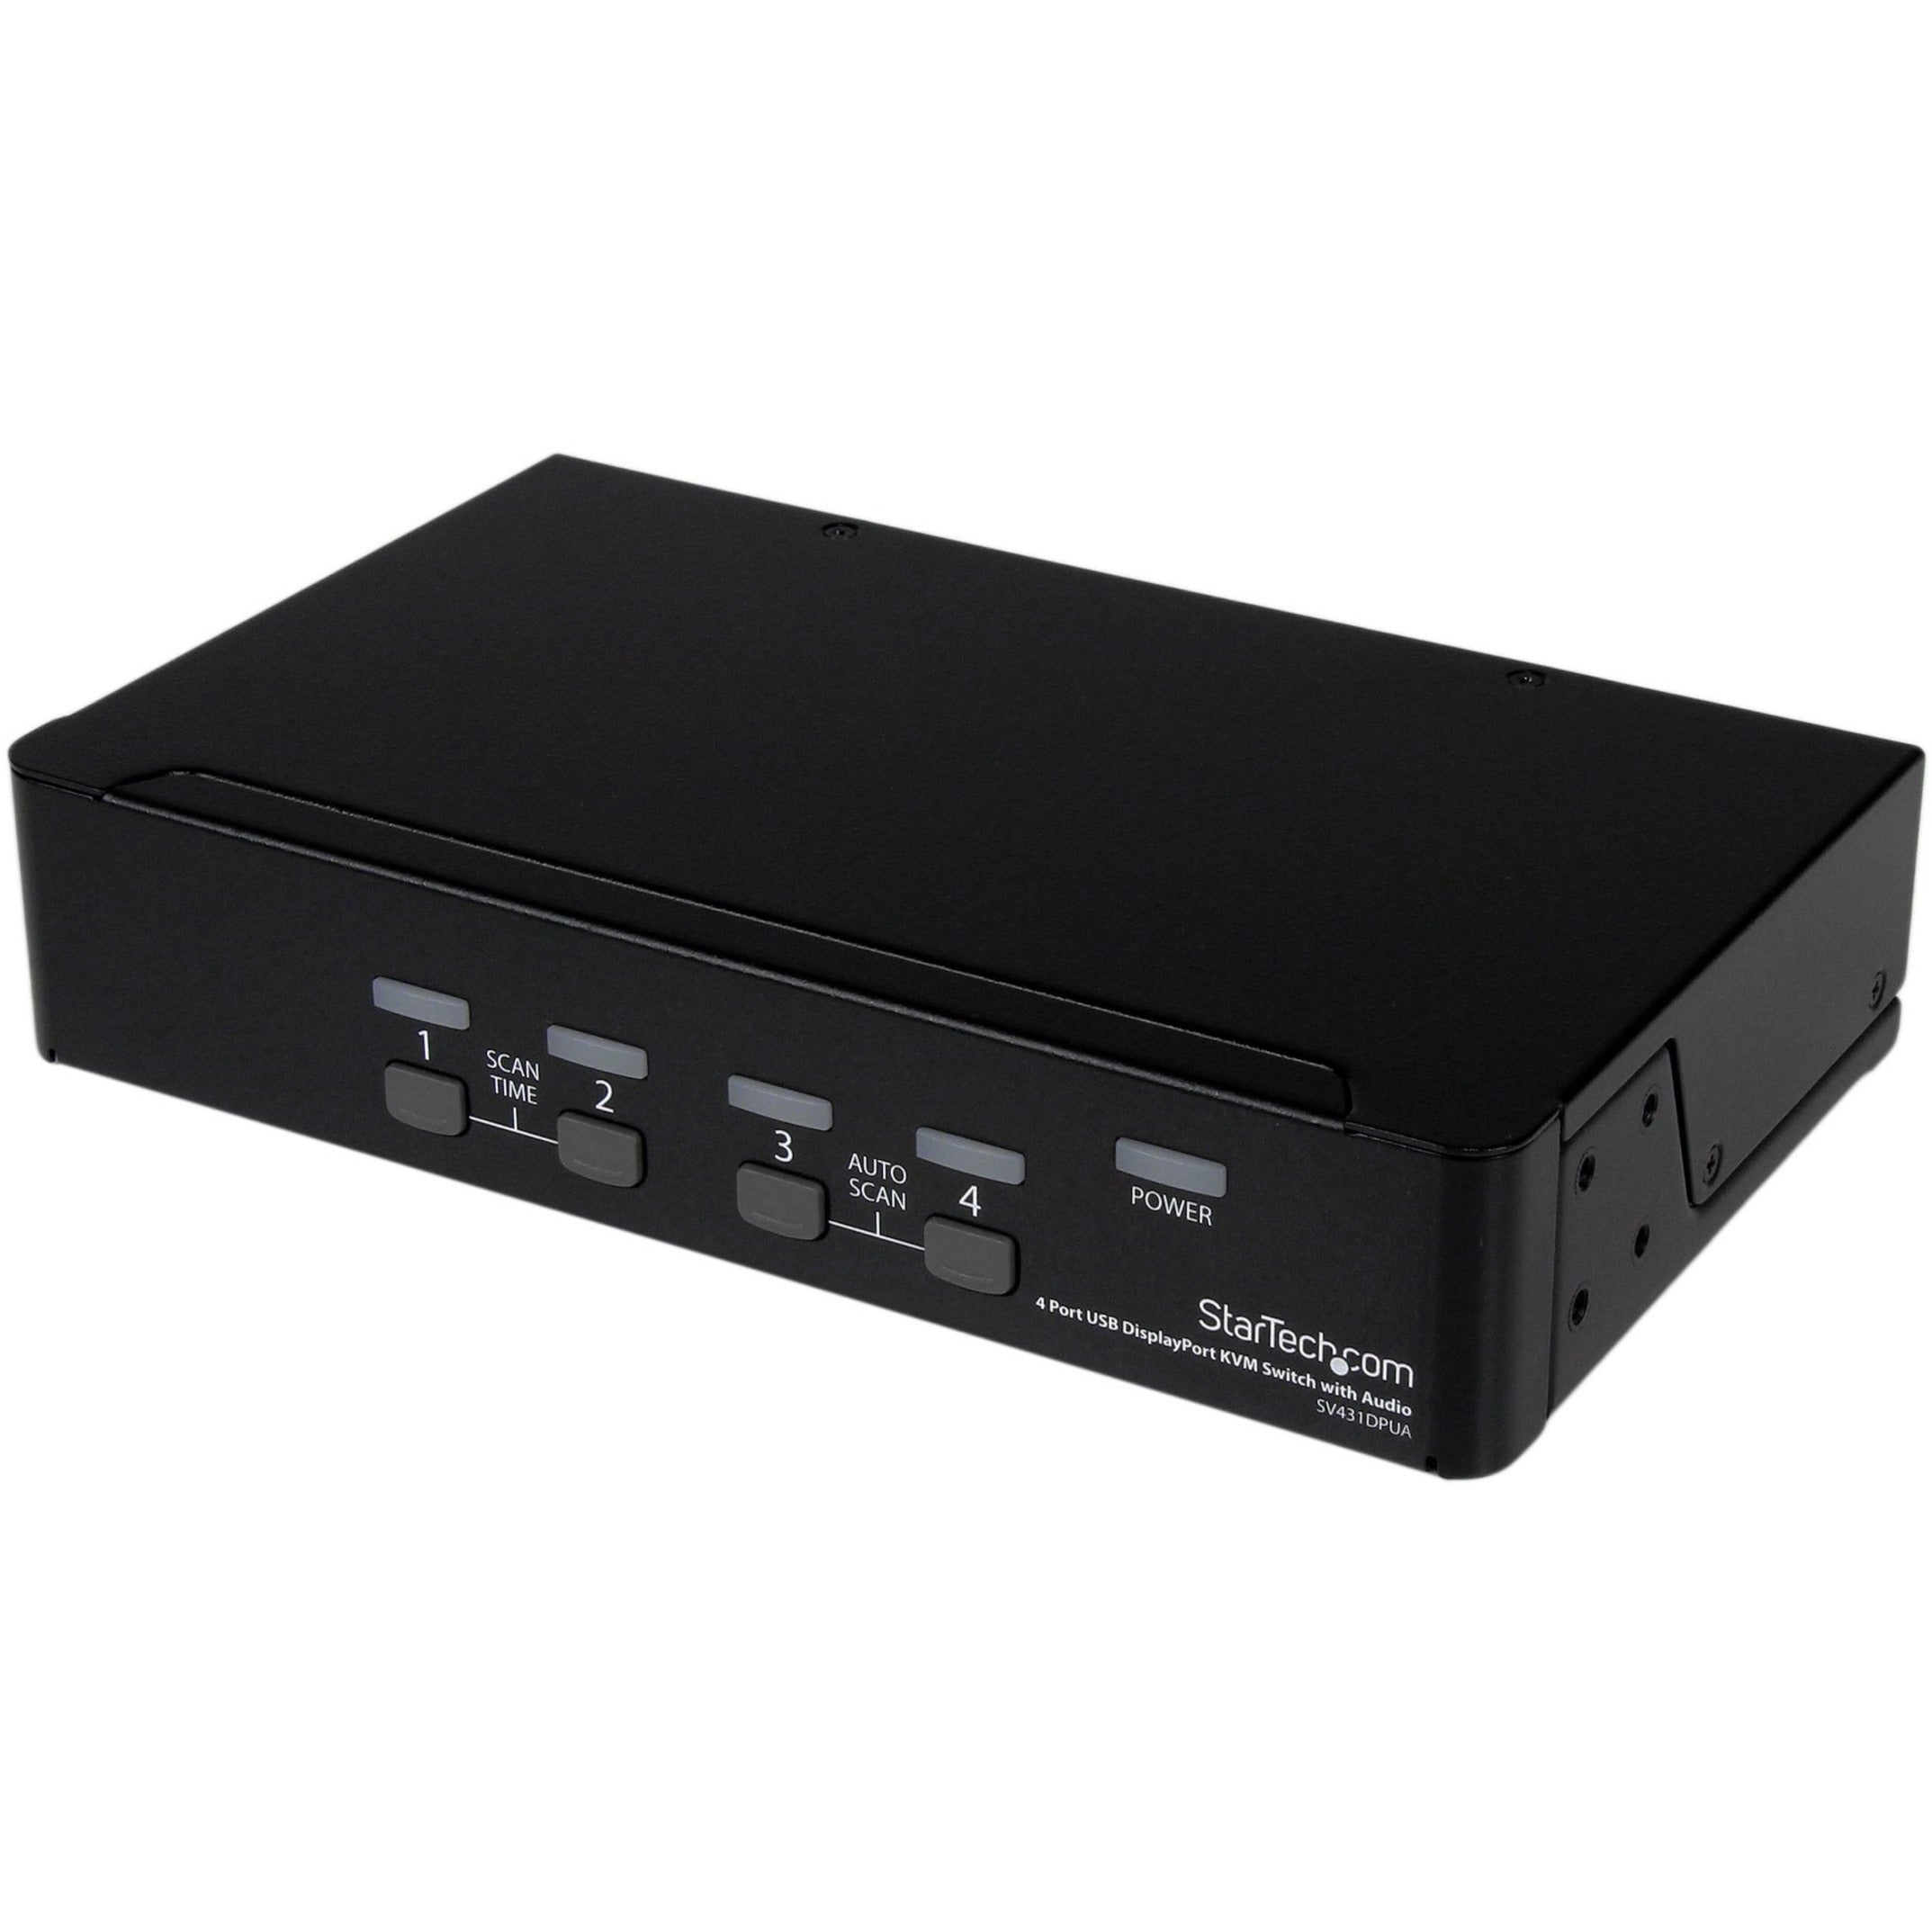 StarTech.com SV431DPUA 4 Port USB DisplayPort KVM Switch with Audio, WQXGA, 3840 x 2400, 3 Year Warranty